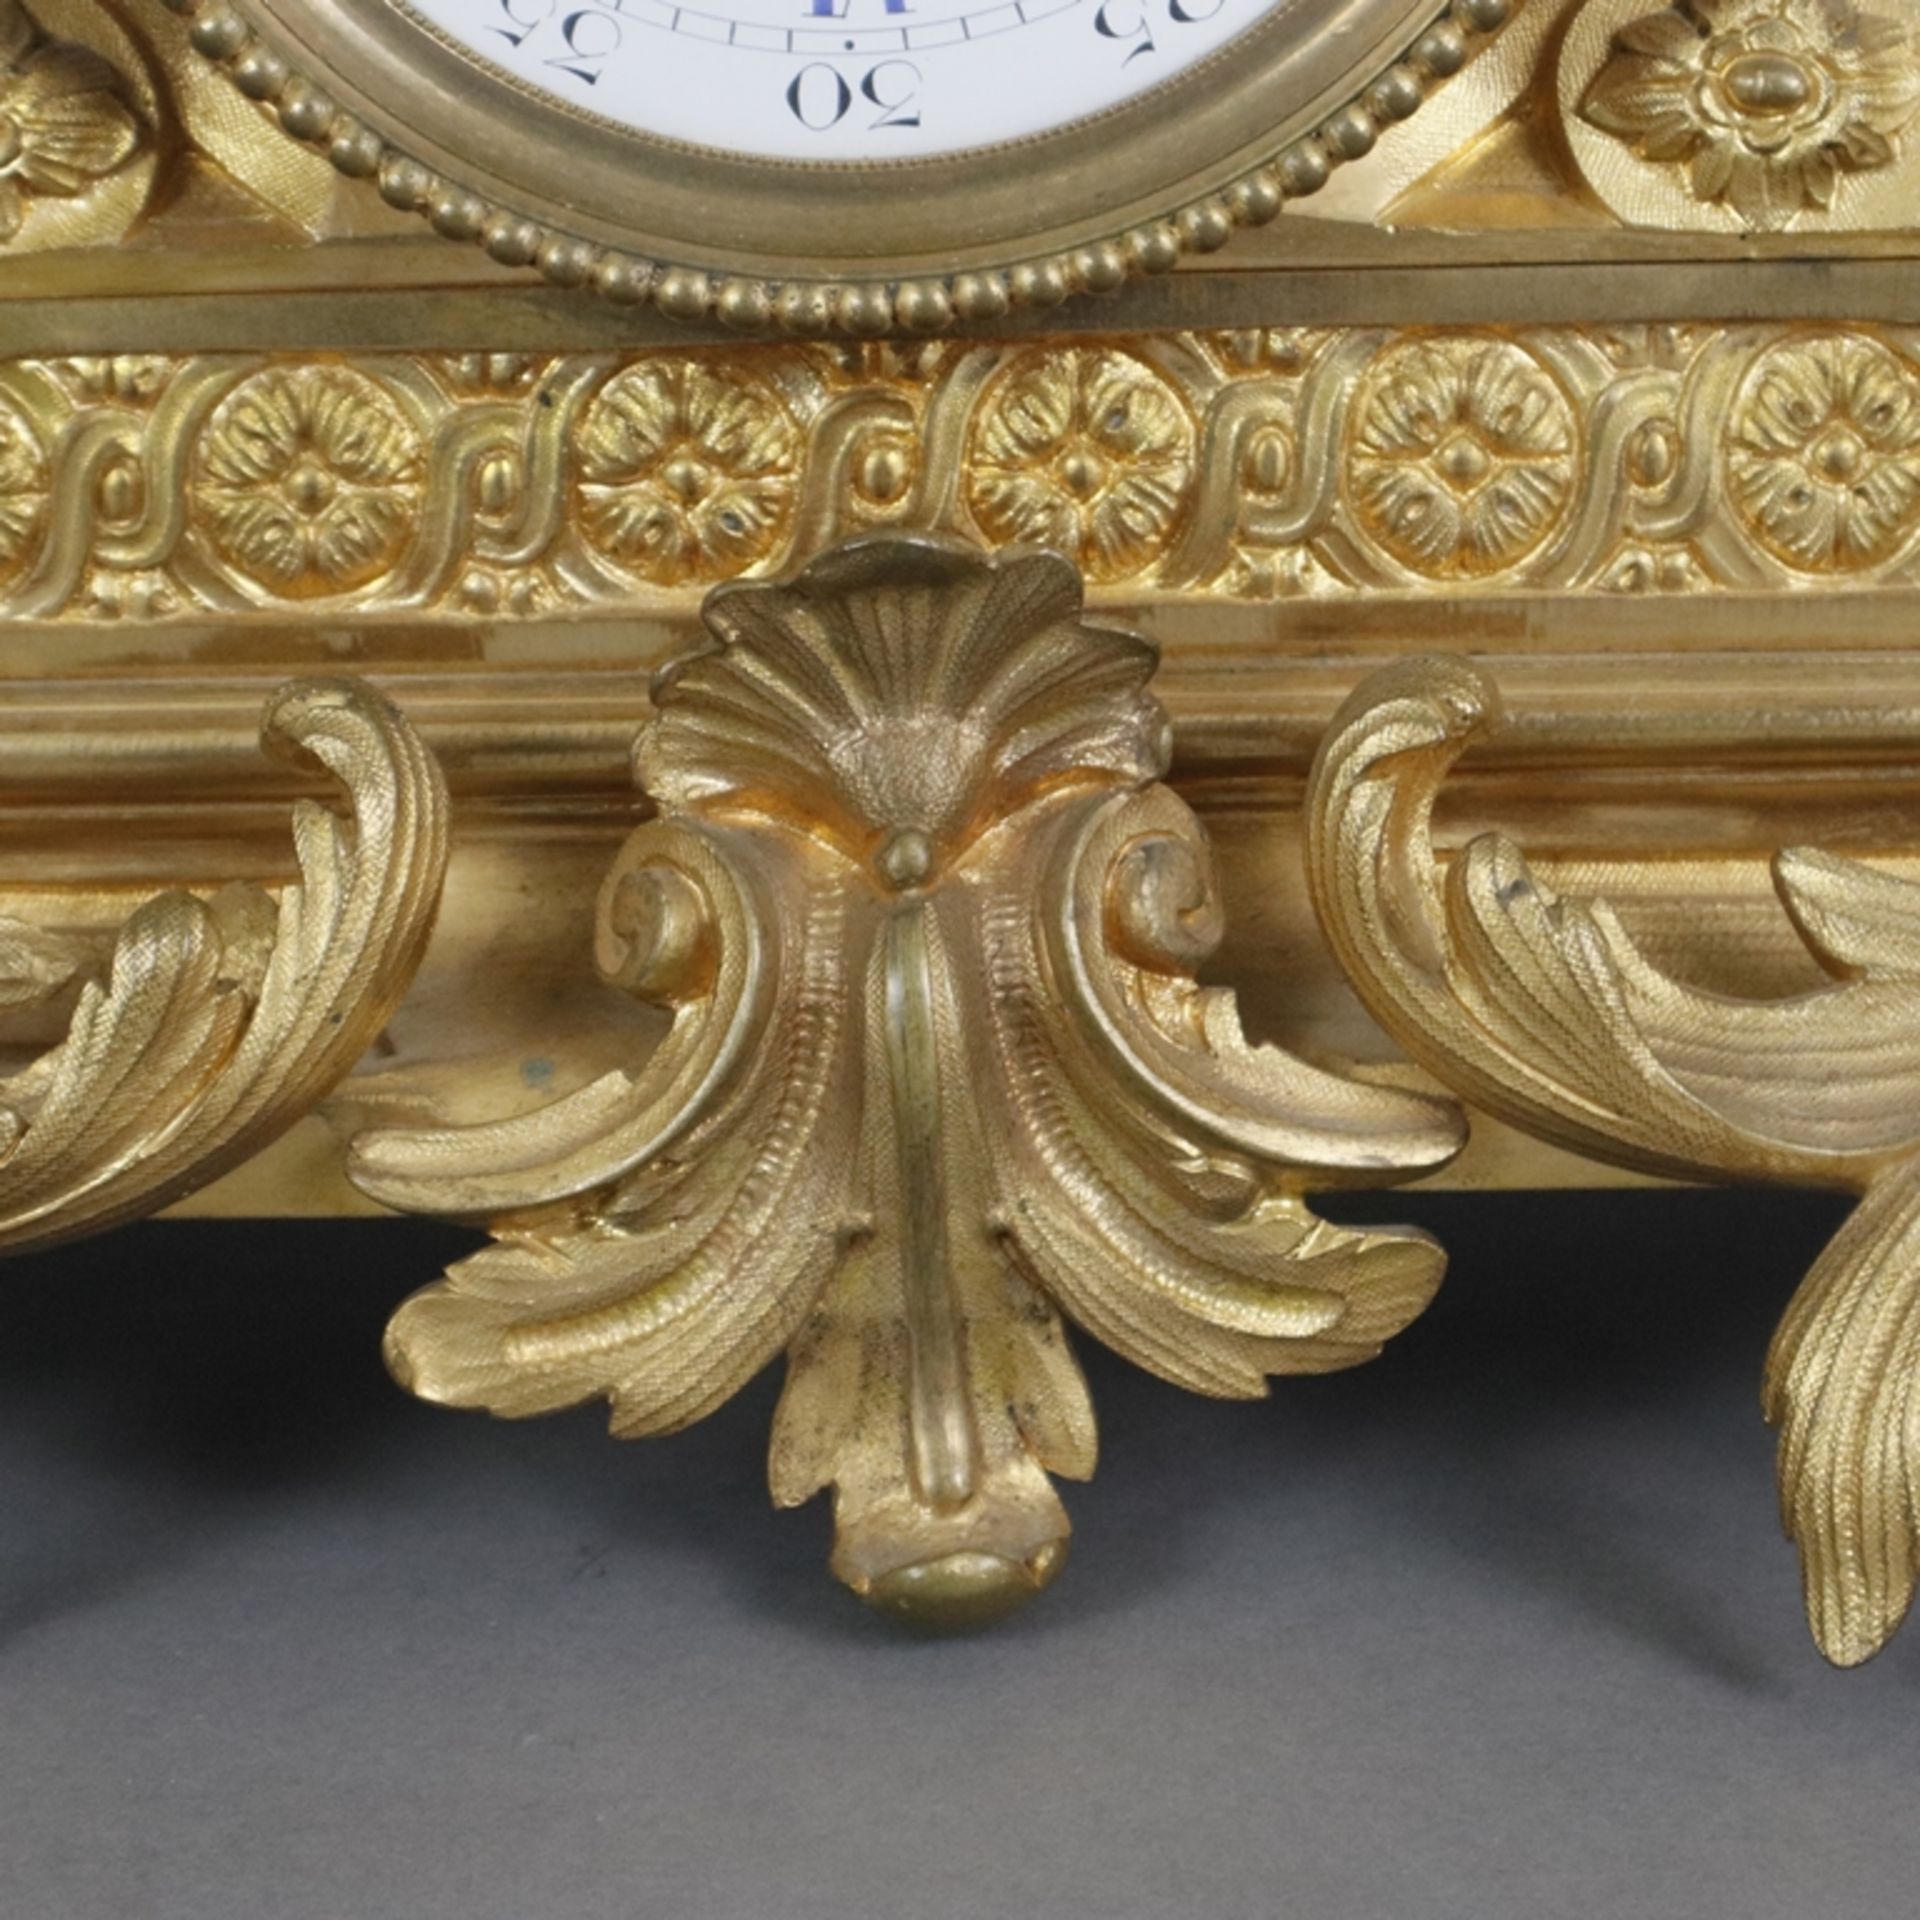 Prunkvolle Pendule - Paris, Frankreich, um 1800, vergoldetes Bronzegehäuse, reich verziert mit Akan - Image 9 of 15